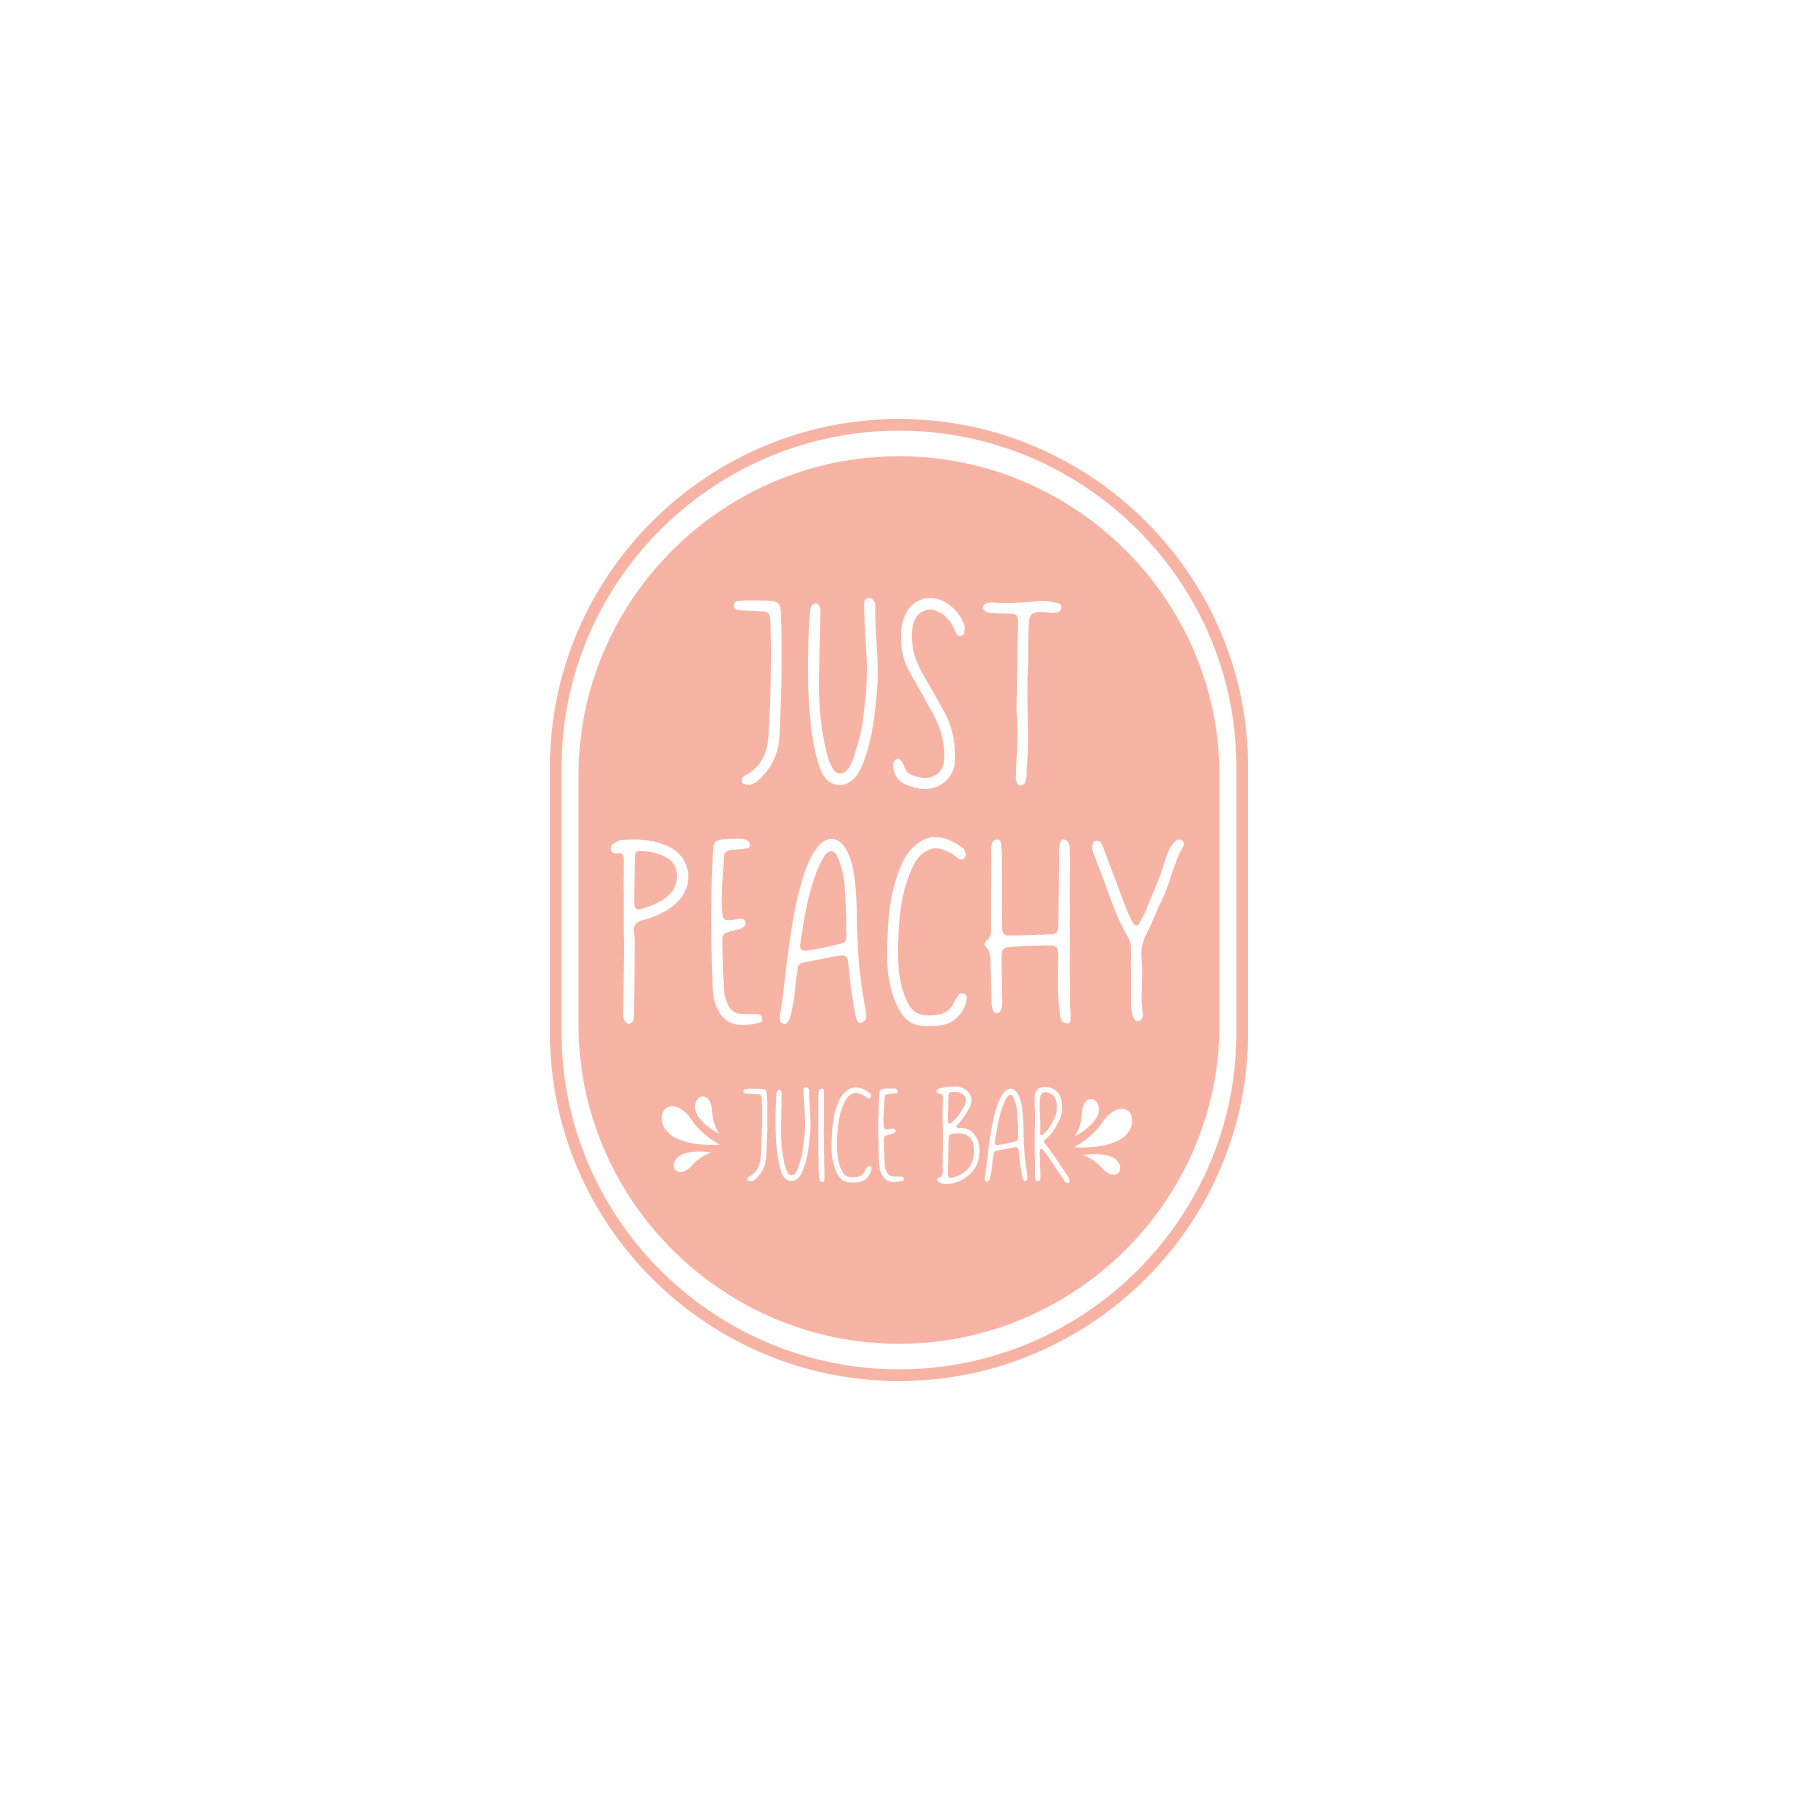 peach_logo